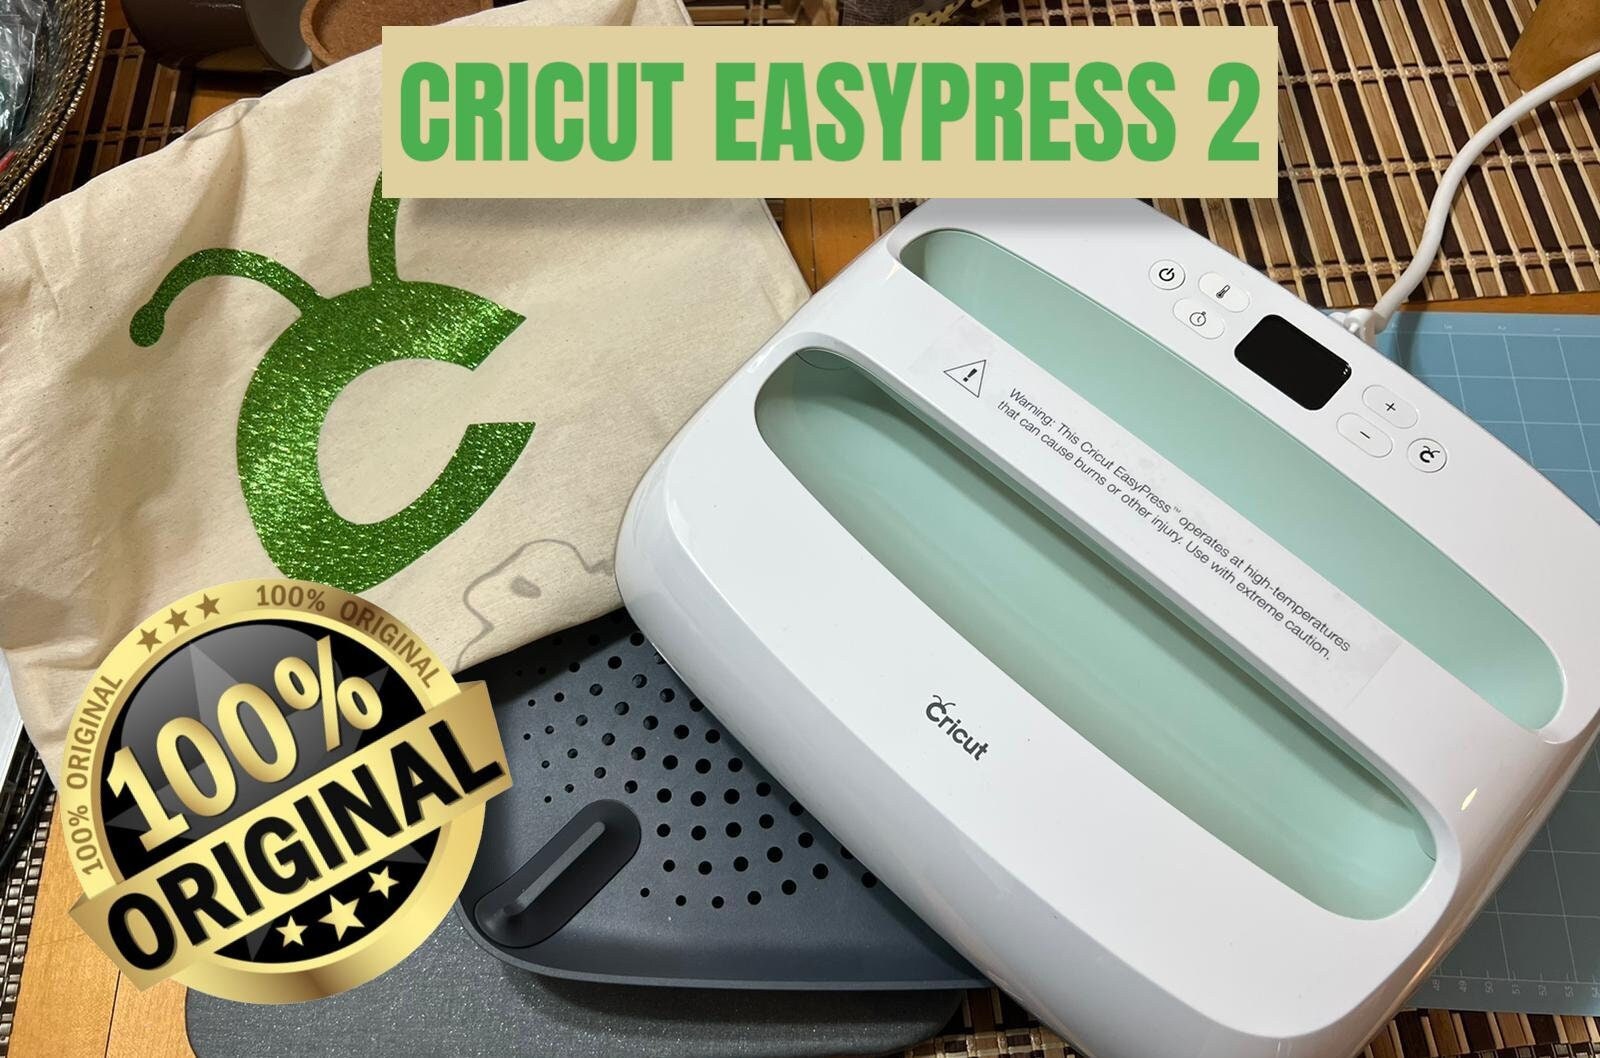 Cricut Easypress 2 Accessories, Cricut 2 Easypress Reviews